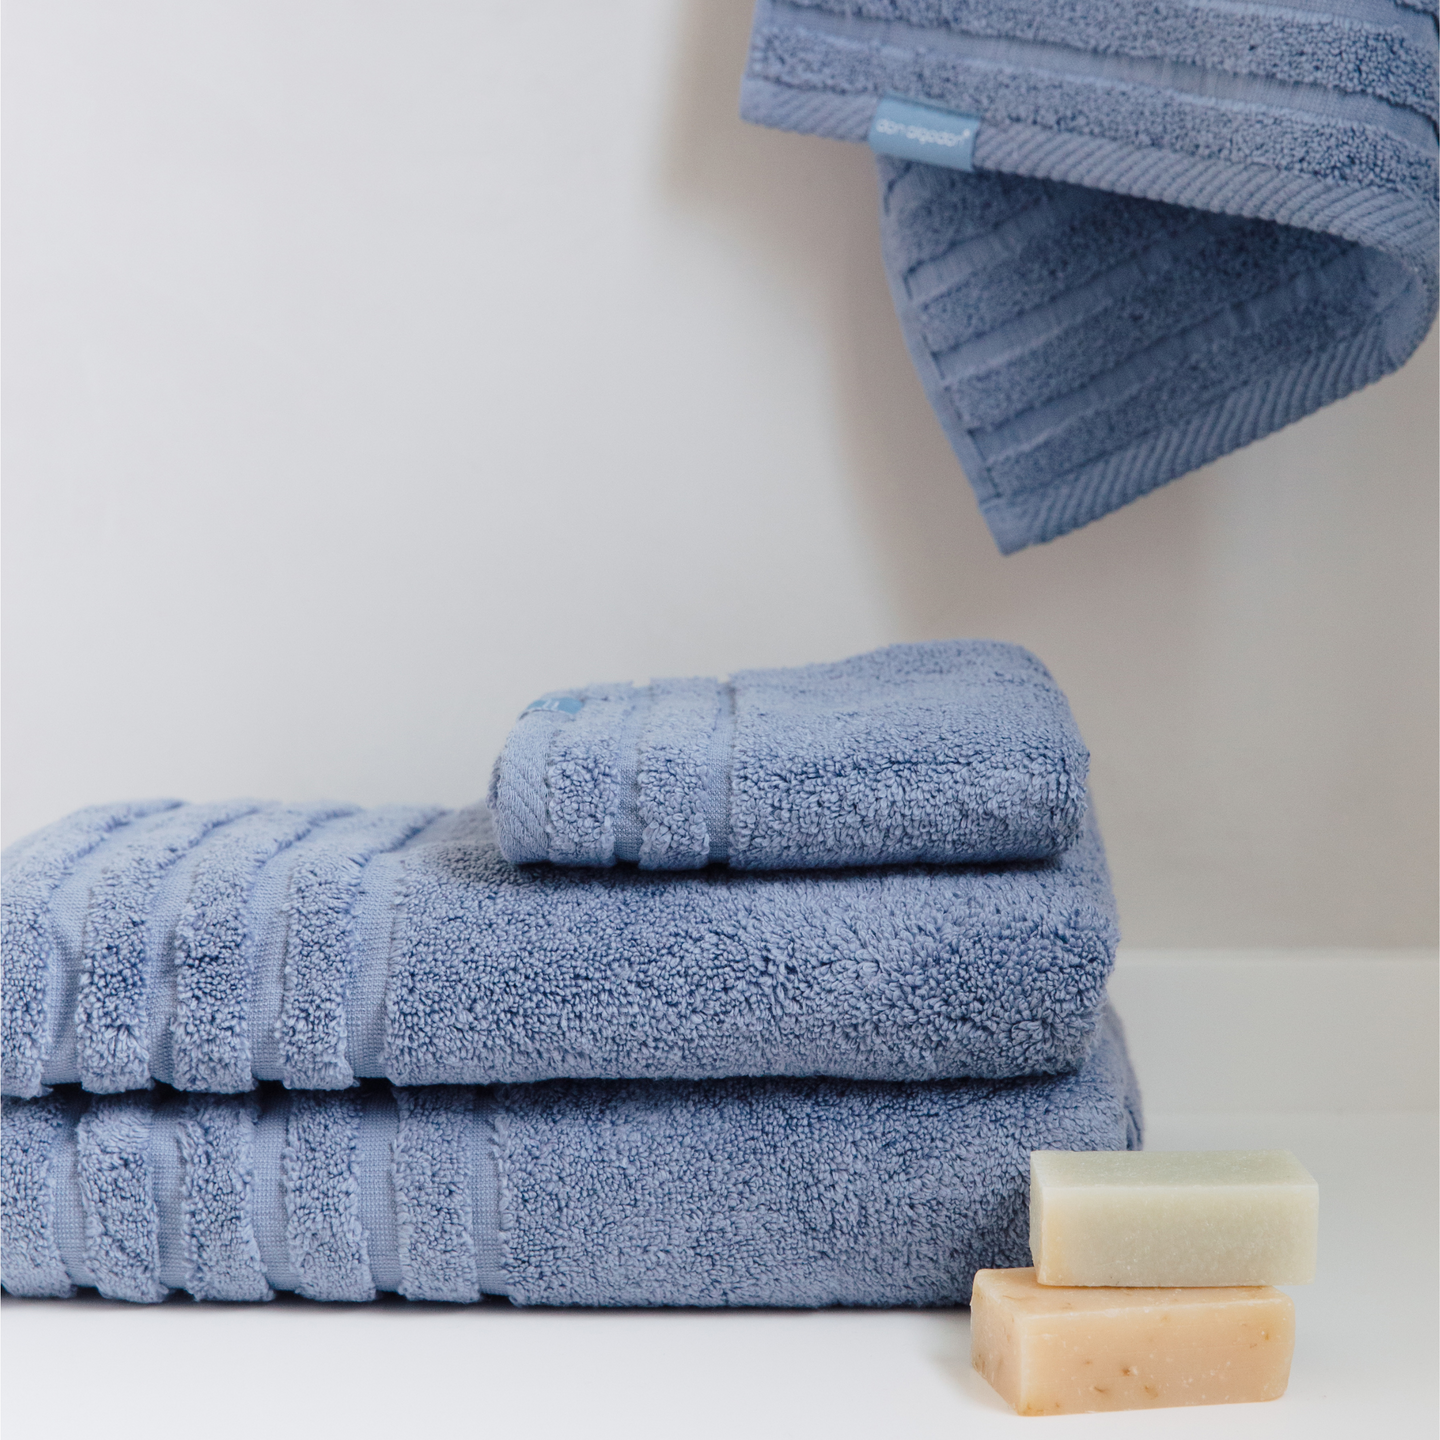 Toallas de Baño Online, Juego de toallas Textil baño, Toallas azul pastel